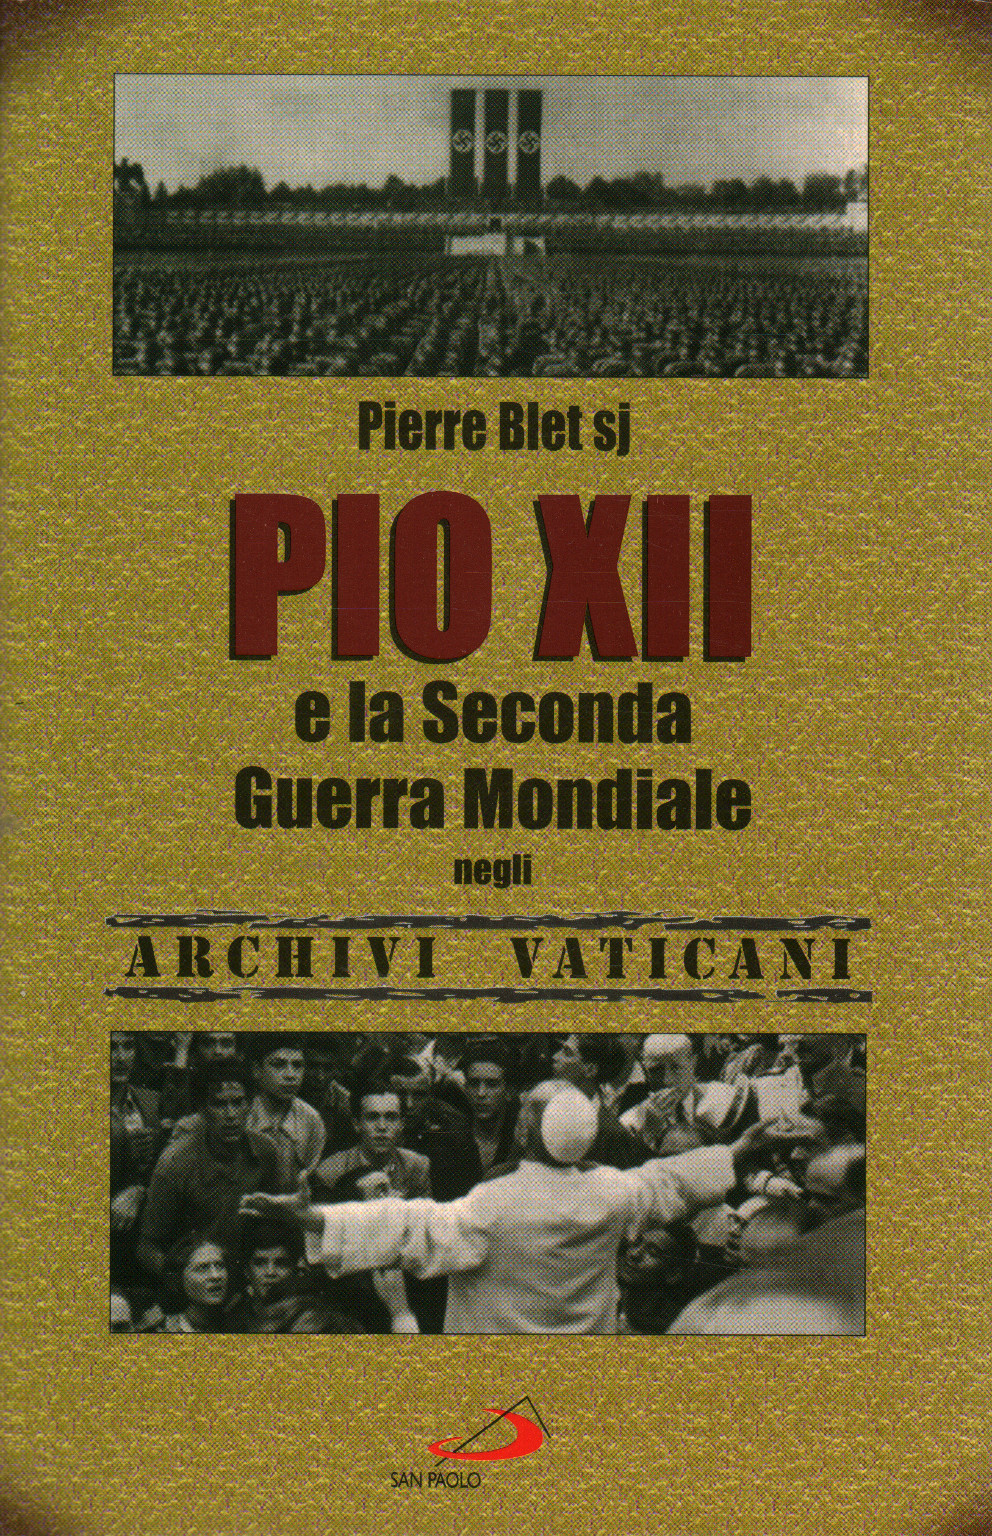 Pius XII und der Zweite Weltkrieg% 2